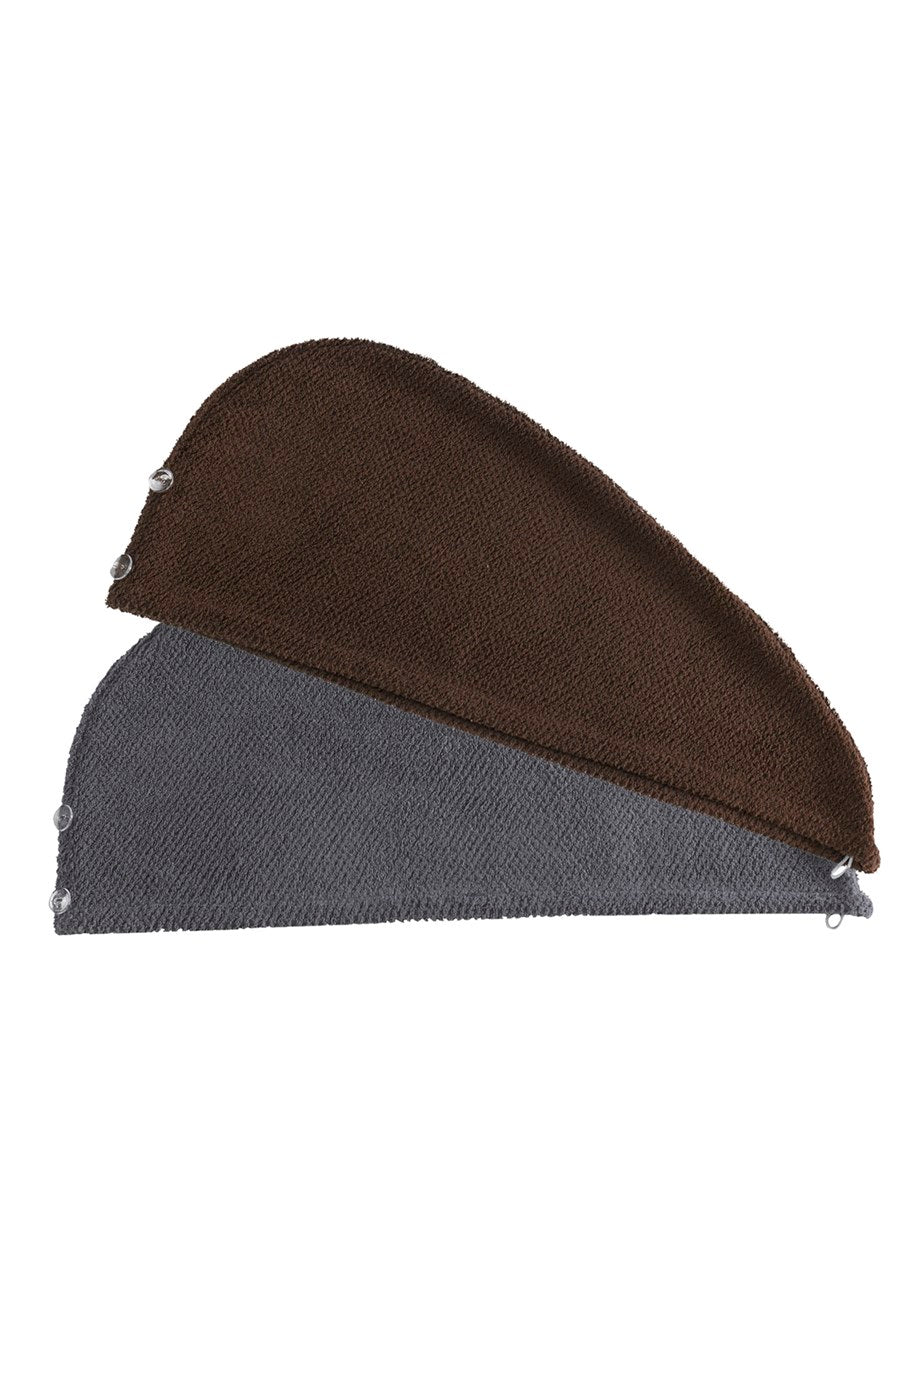 DENIZLI CONCEPT Bonnet Set of 2 Hair Towels Gray-Brown